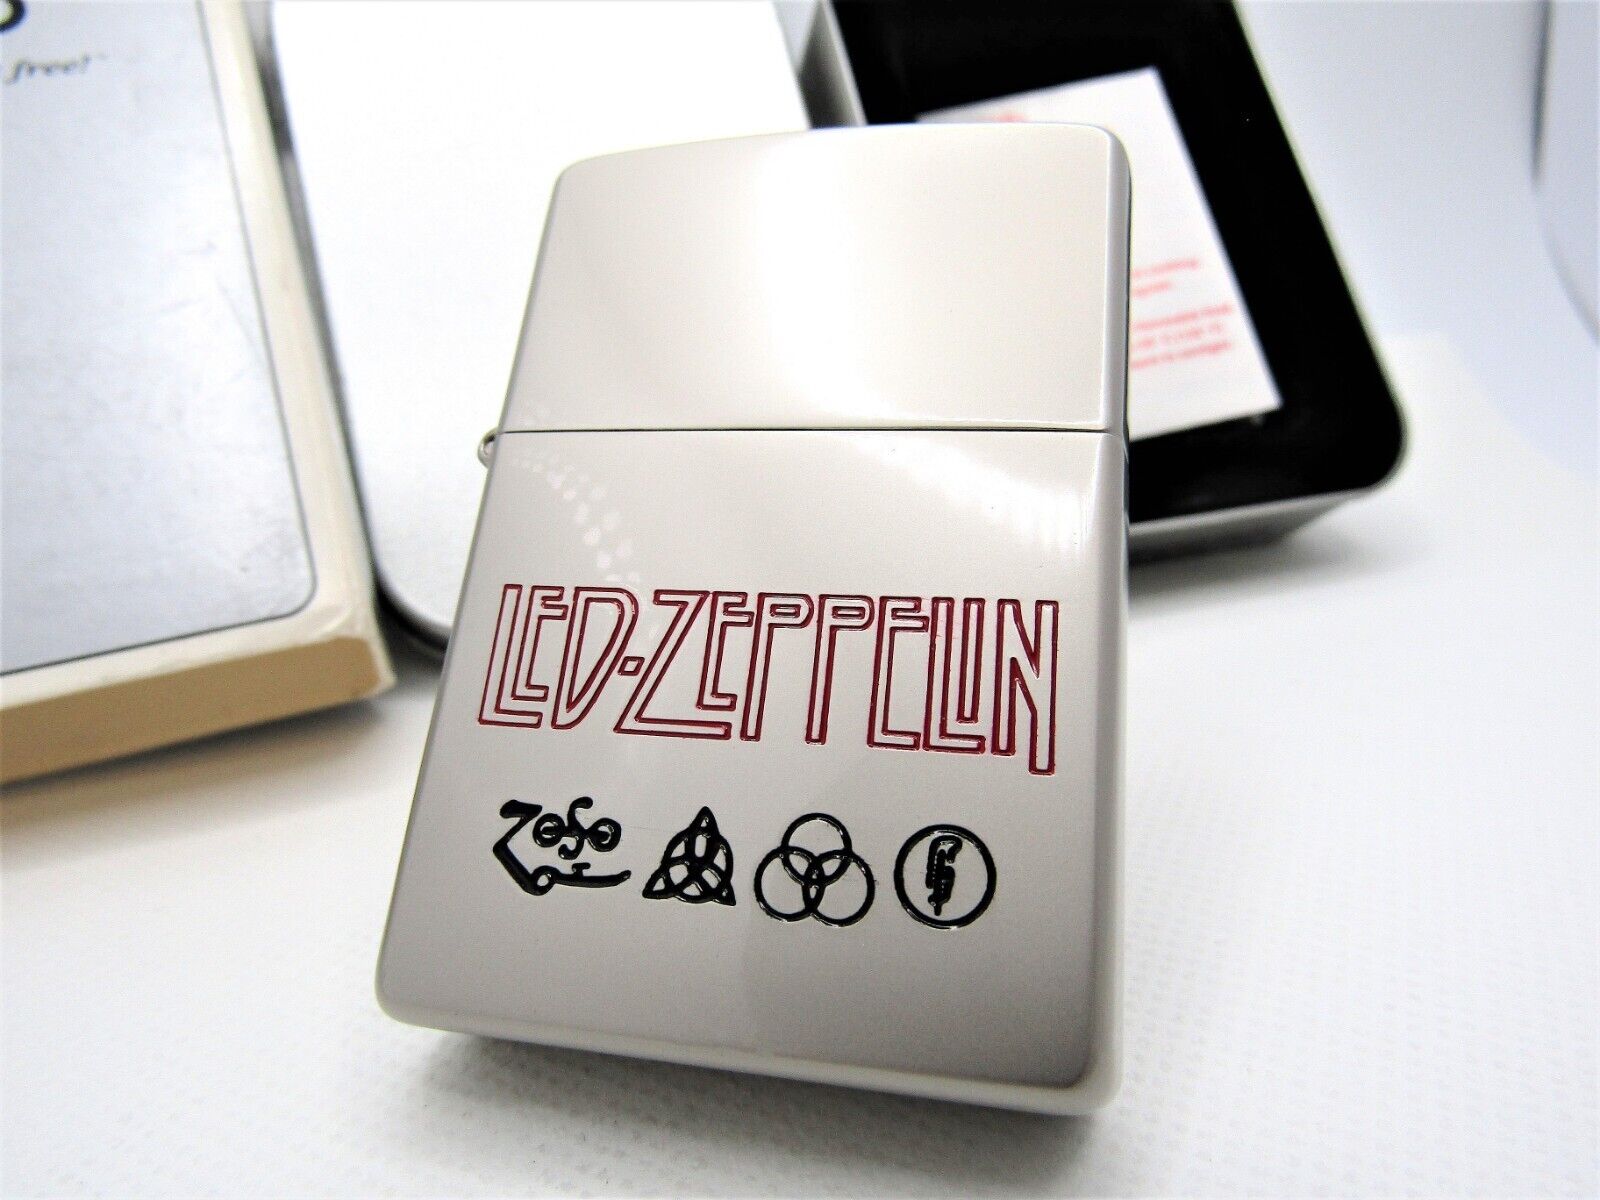 Led Zeppelin Zippo 2000 MIB Rare